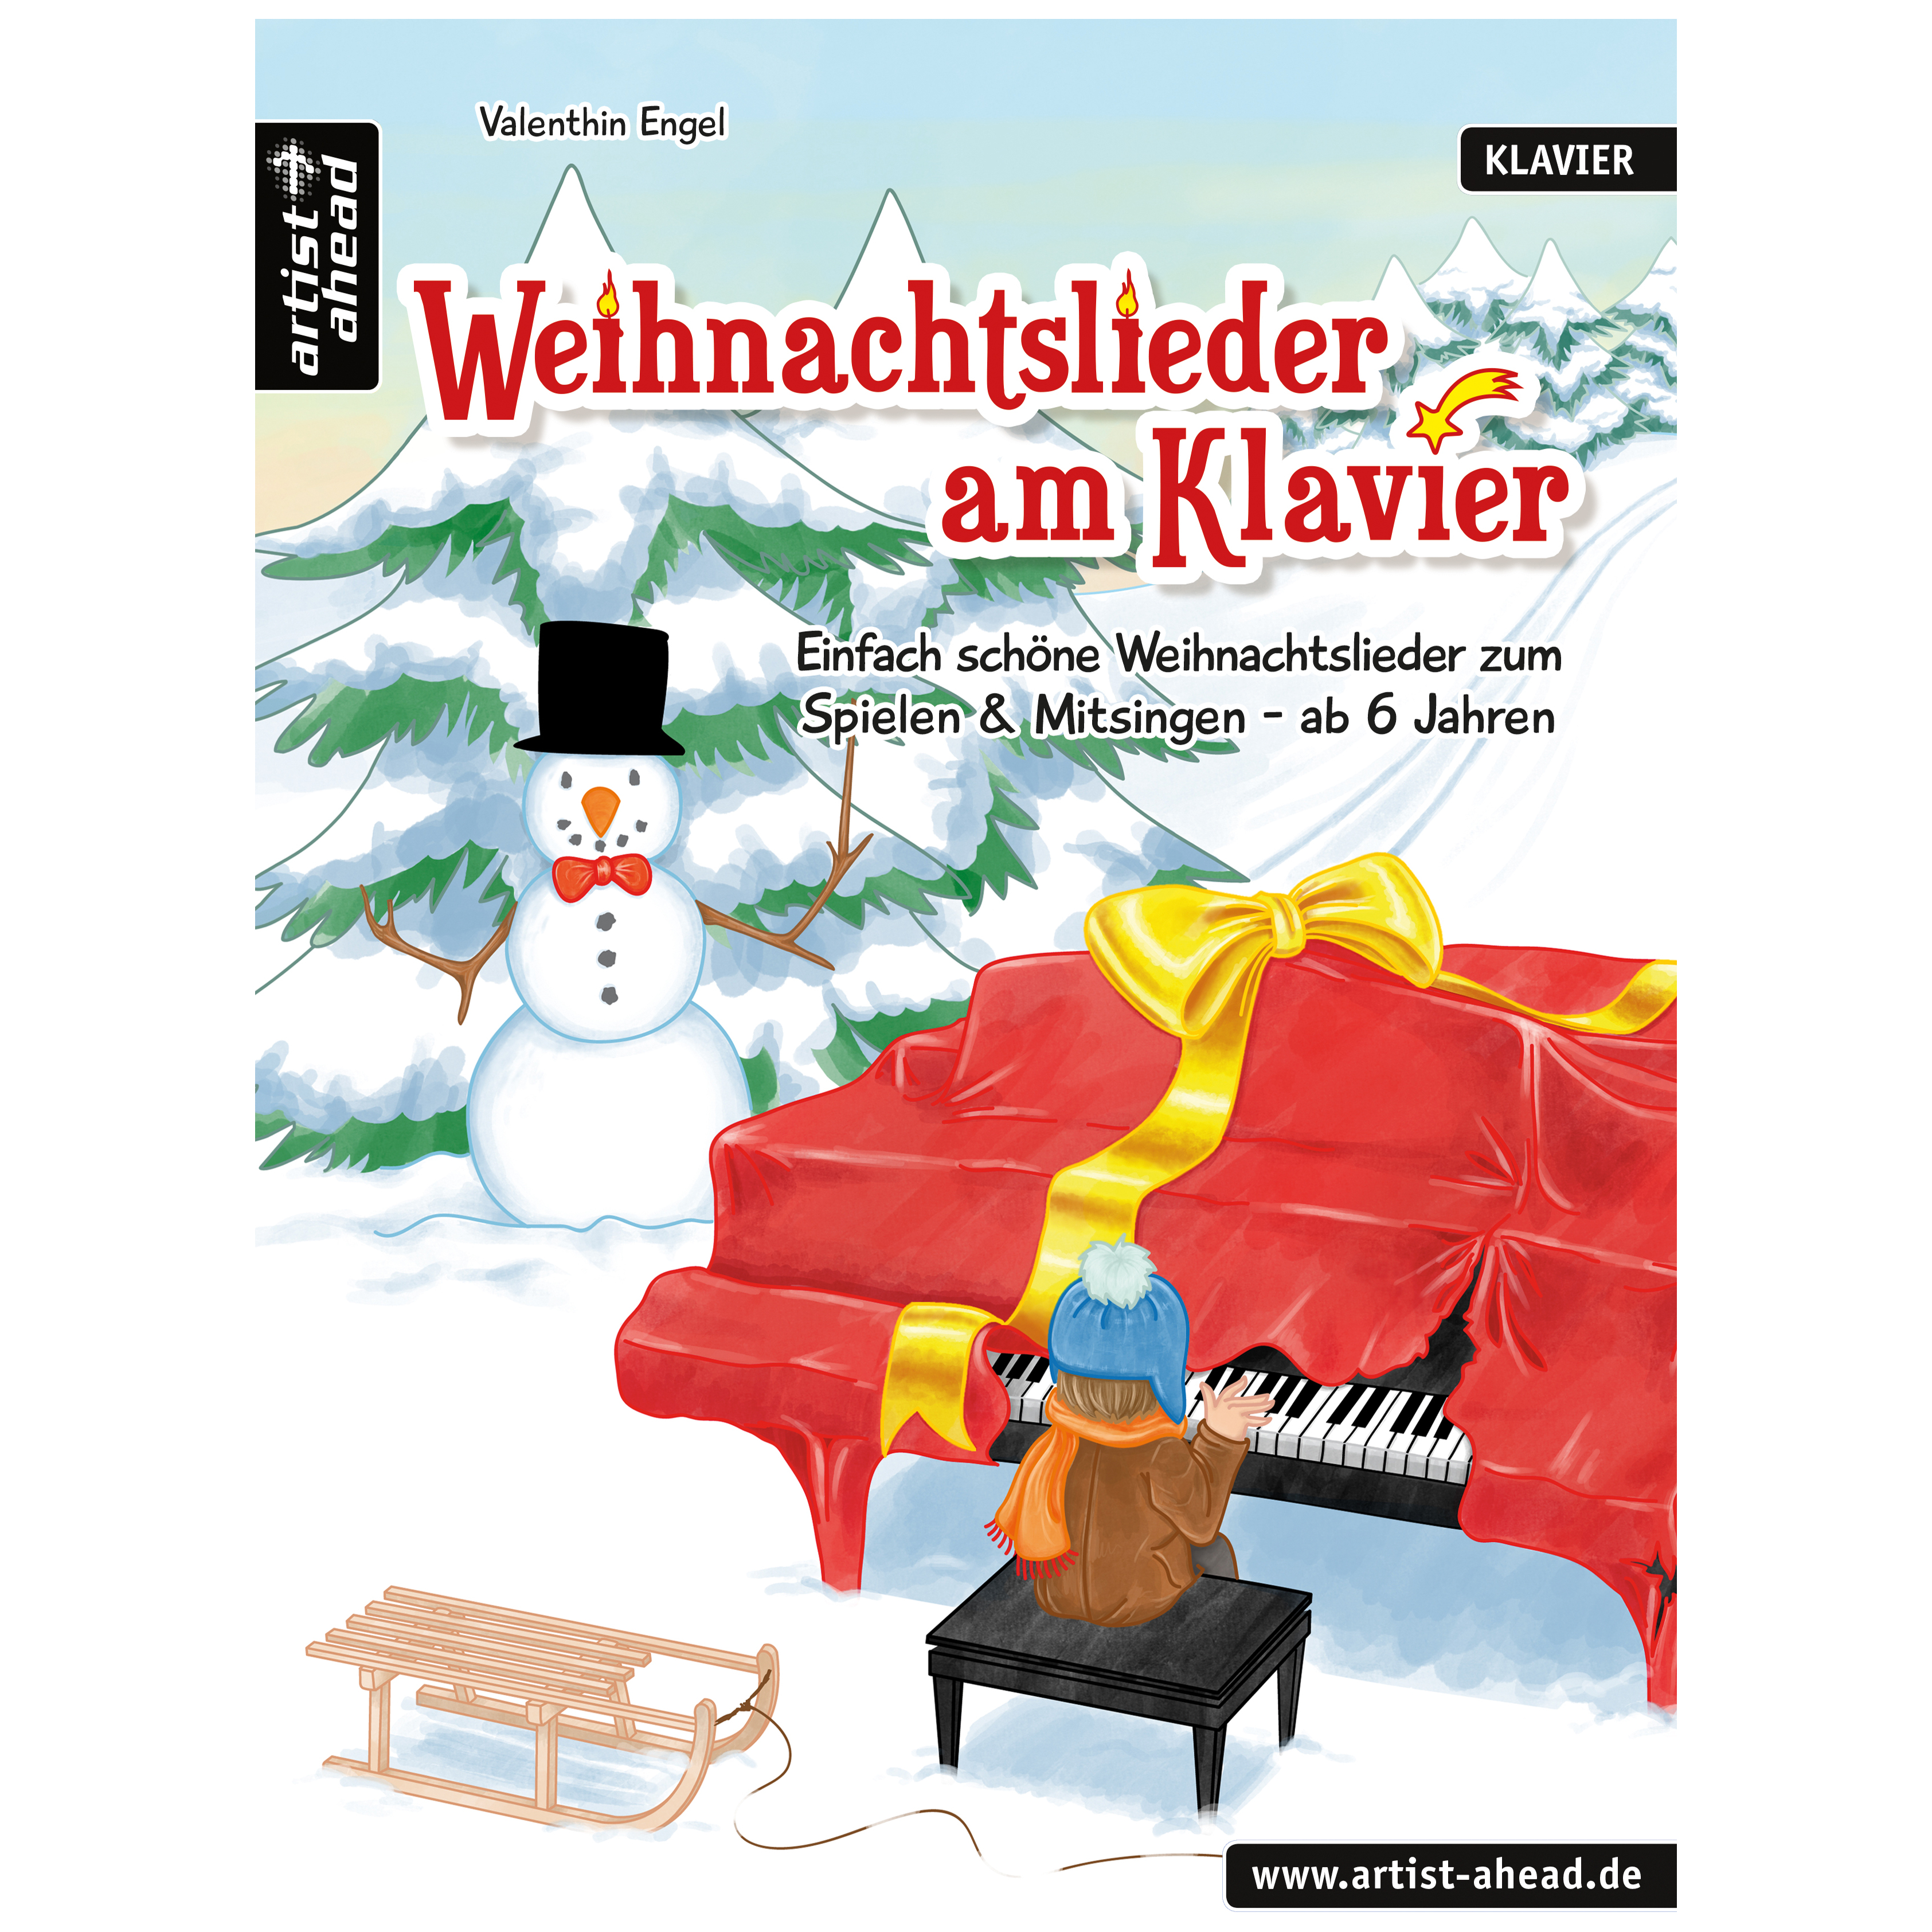 Artist Ahead Weihnachtslieder am Klavier - Valenthin Engel